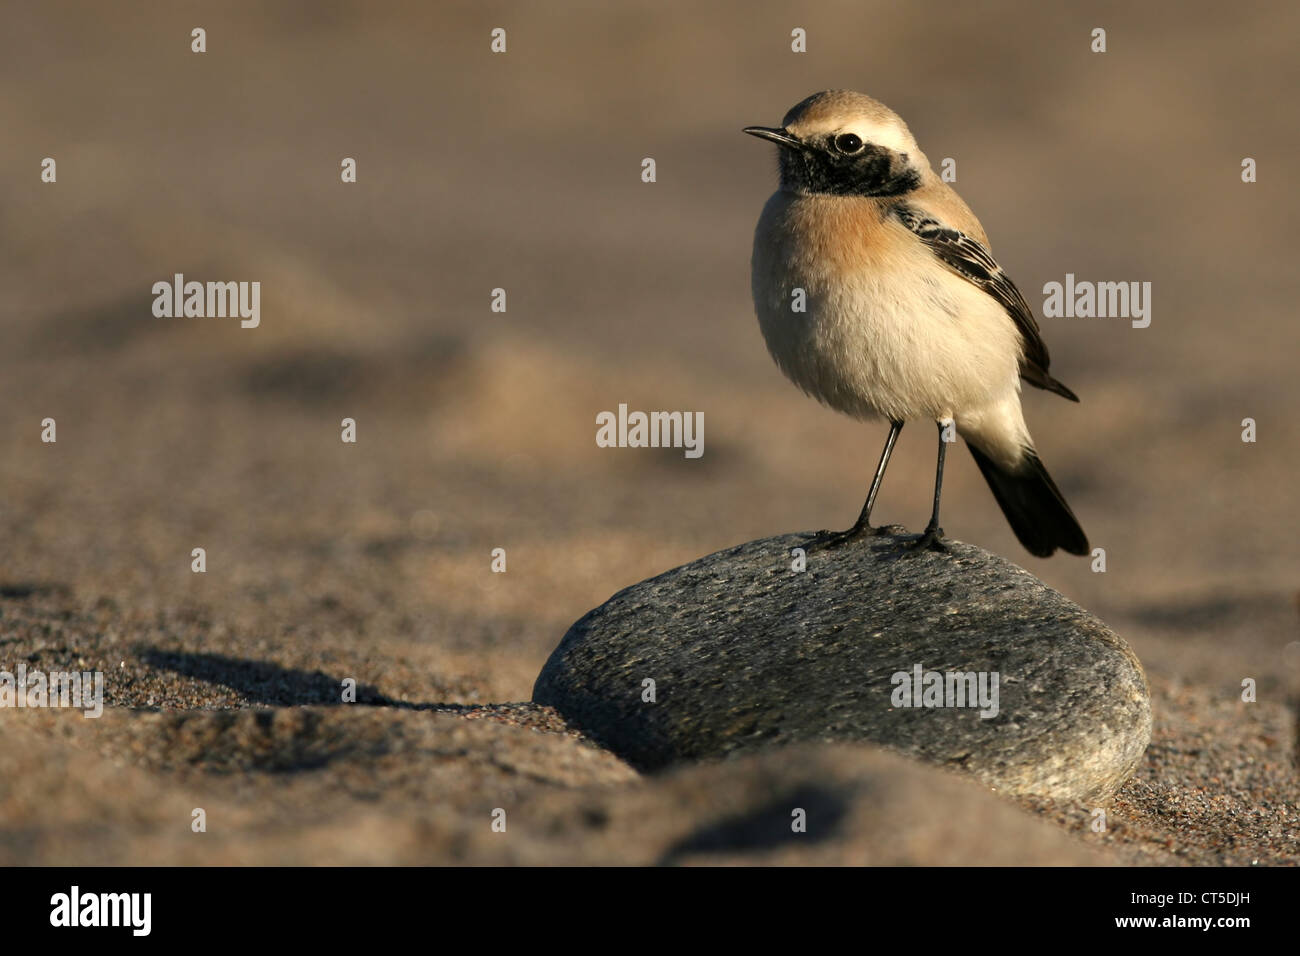 Deserto culbianco (Oenanthe deserti) prese in Girdleness, Aberdeenshire, Scozia. Un raro uccello in visita per questa parte del mondo Foto Stock